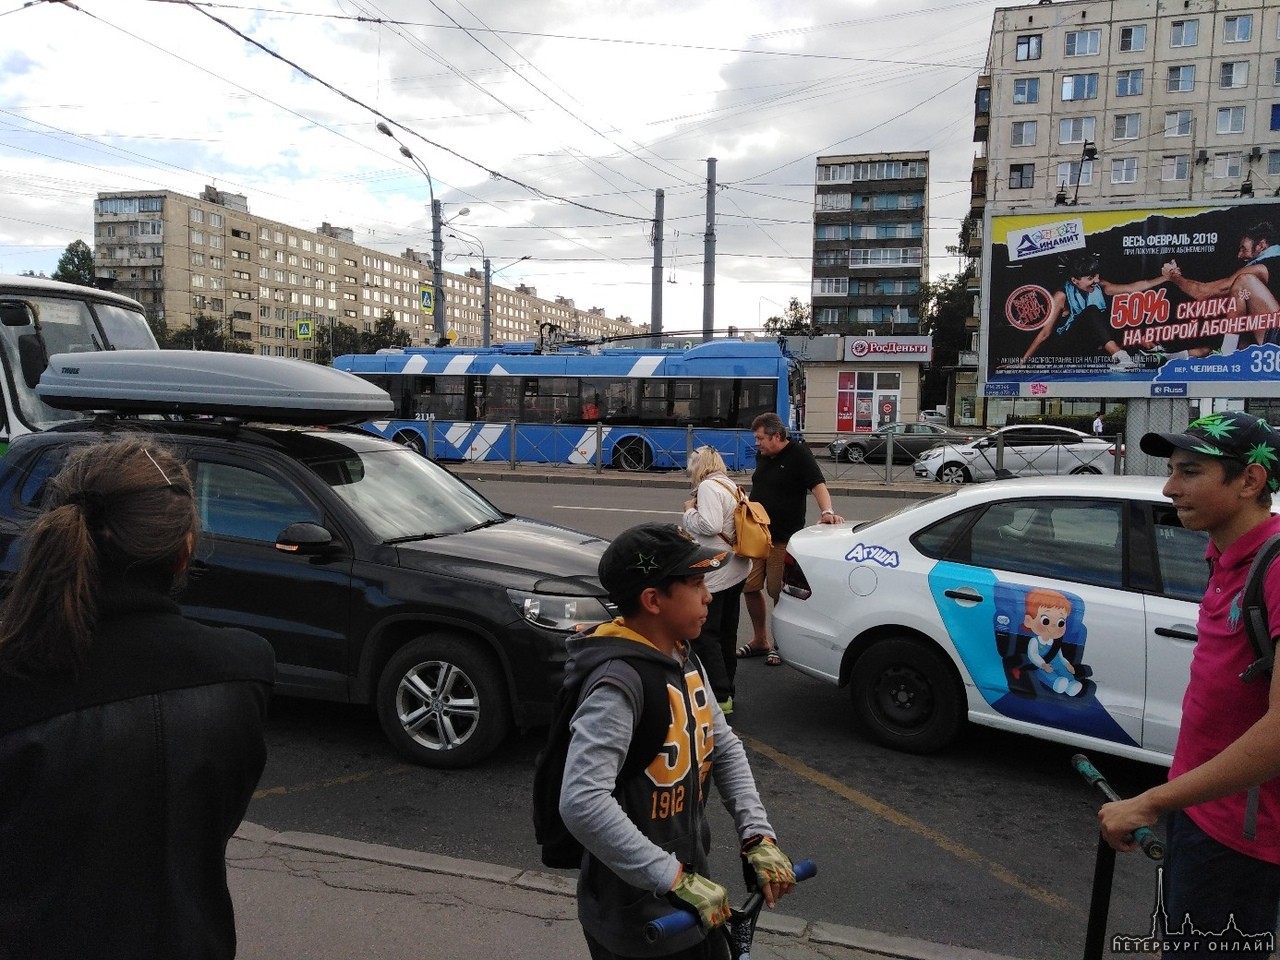 Около Метро Дыбенко, на пр. Большевиков Яндекс подрезал отъезжающий Volkswagen на остановке. Автобу...